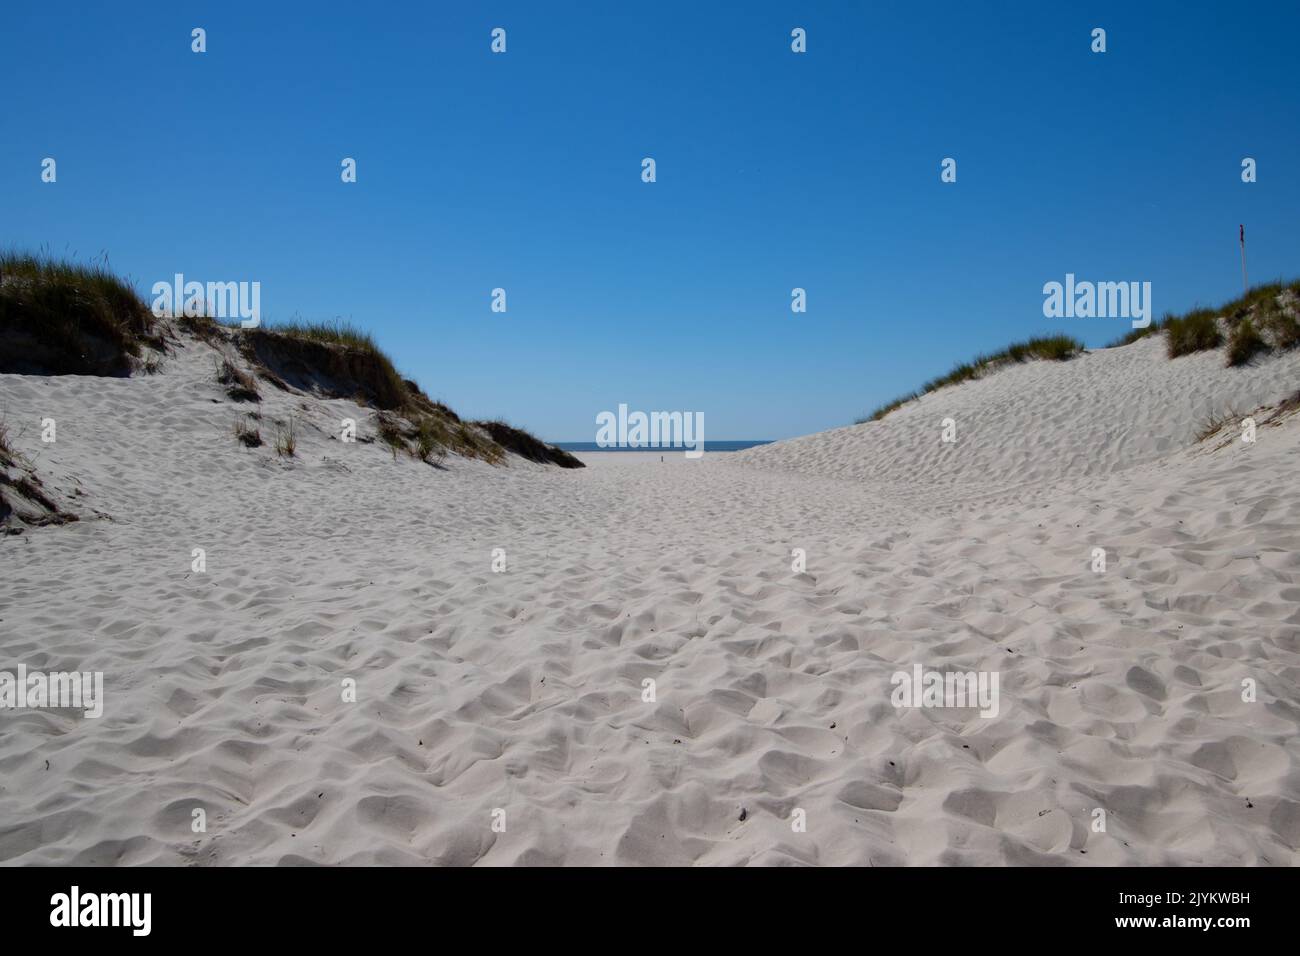 Dune landscape on the island of Amrum Stock Photo